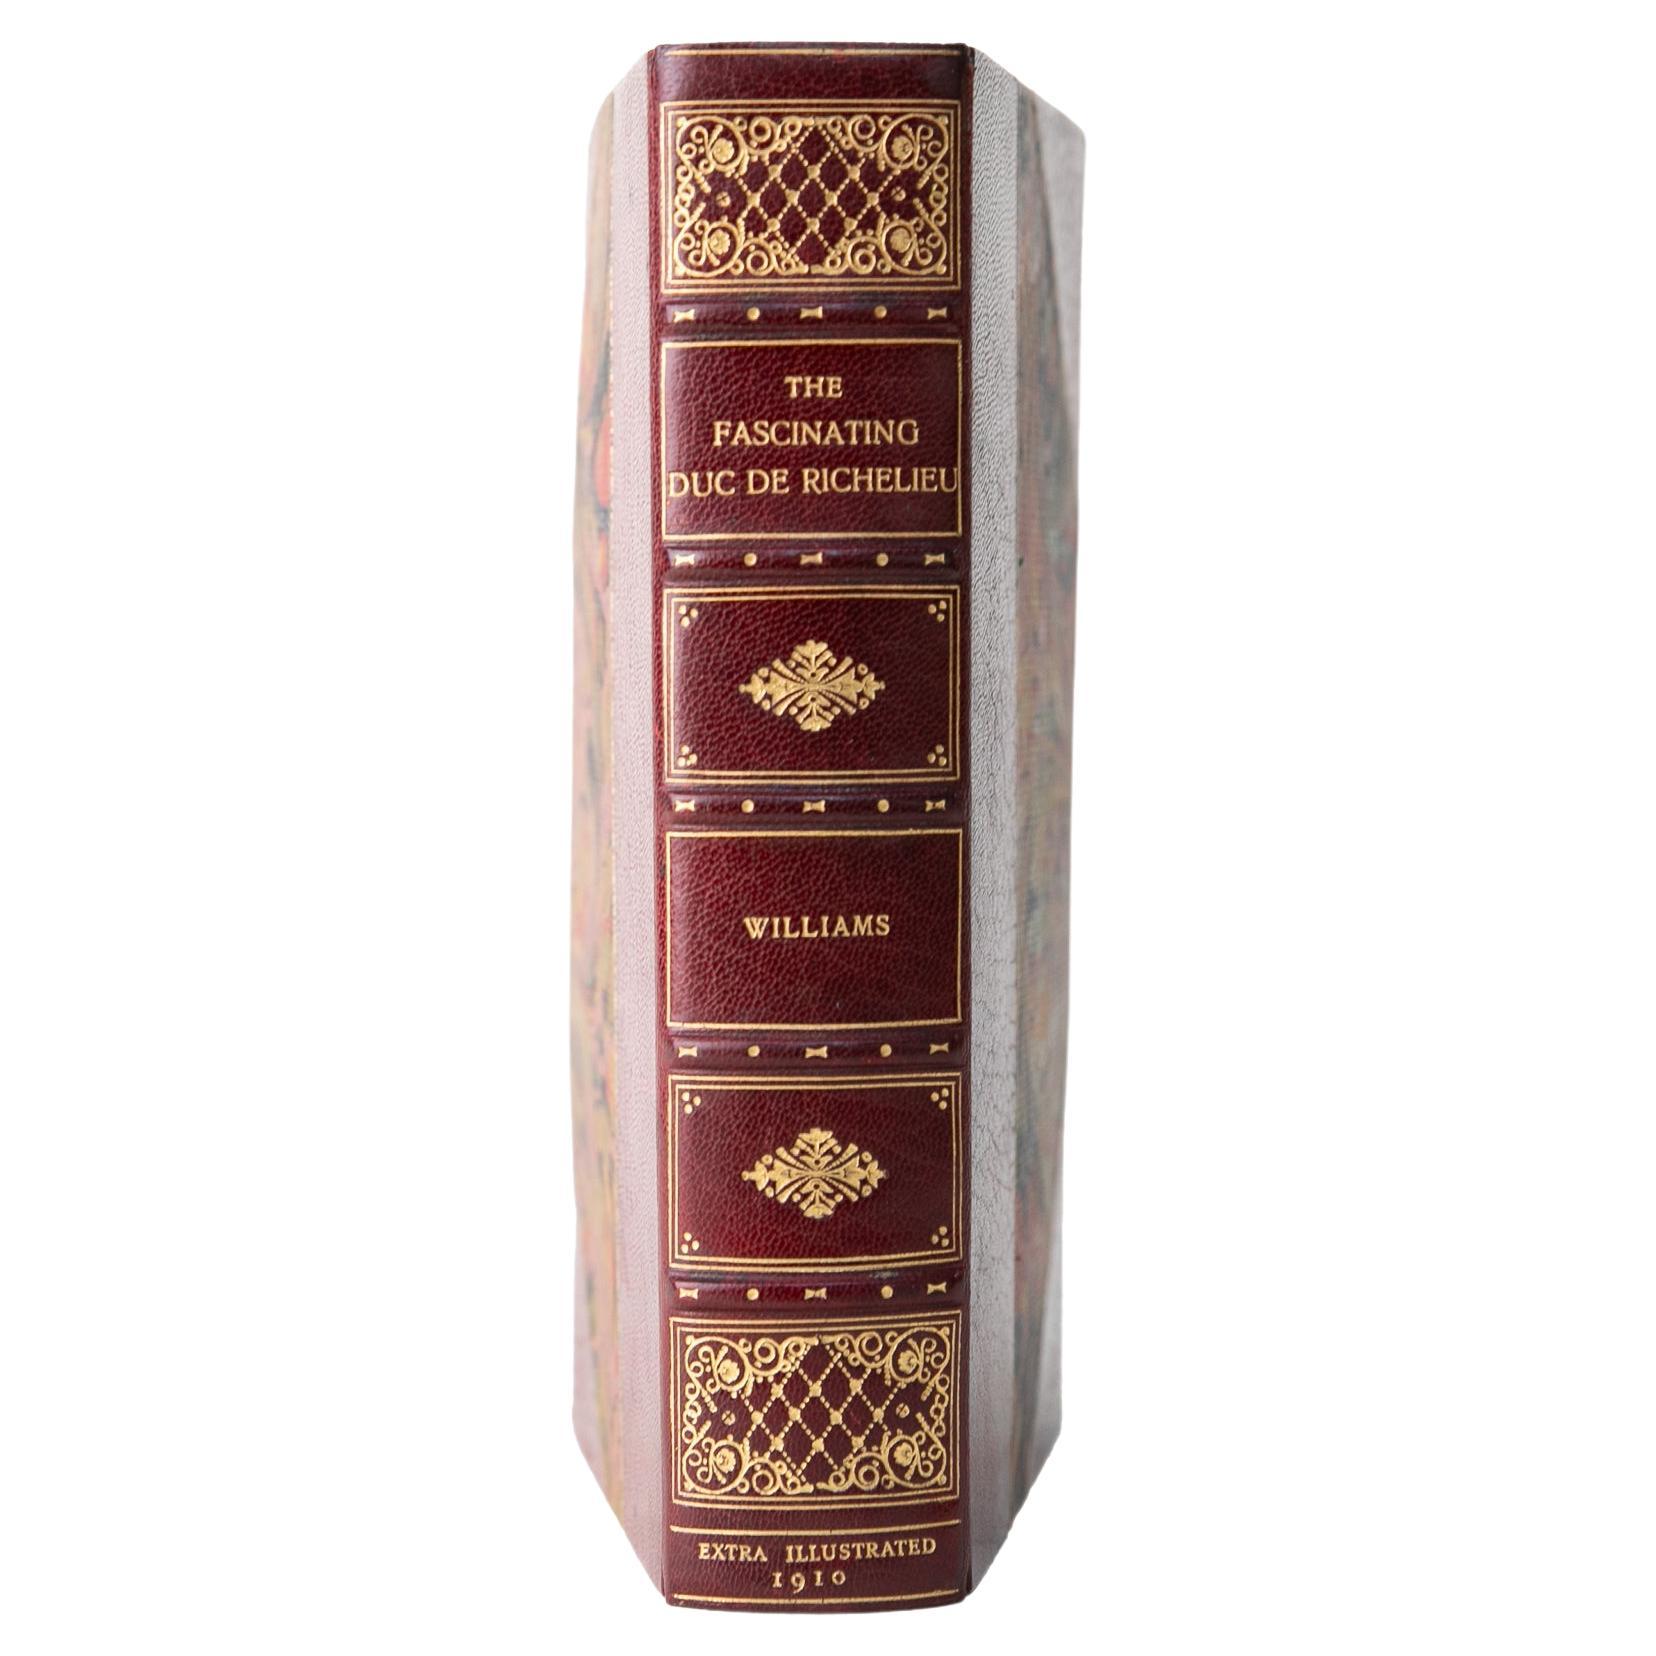 1 Volume. H. Noel Williams, The Fascinating Duc de Richelieu. For Sale